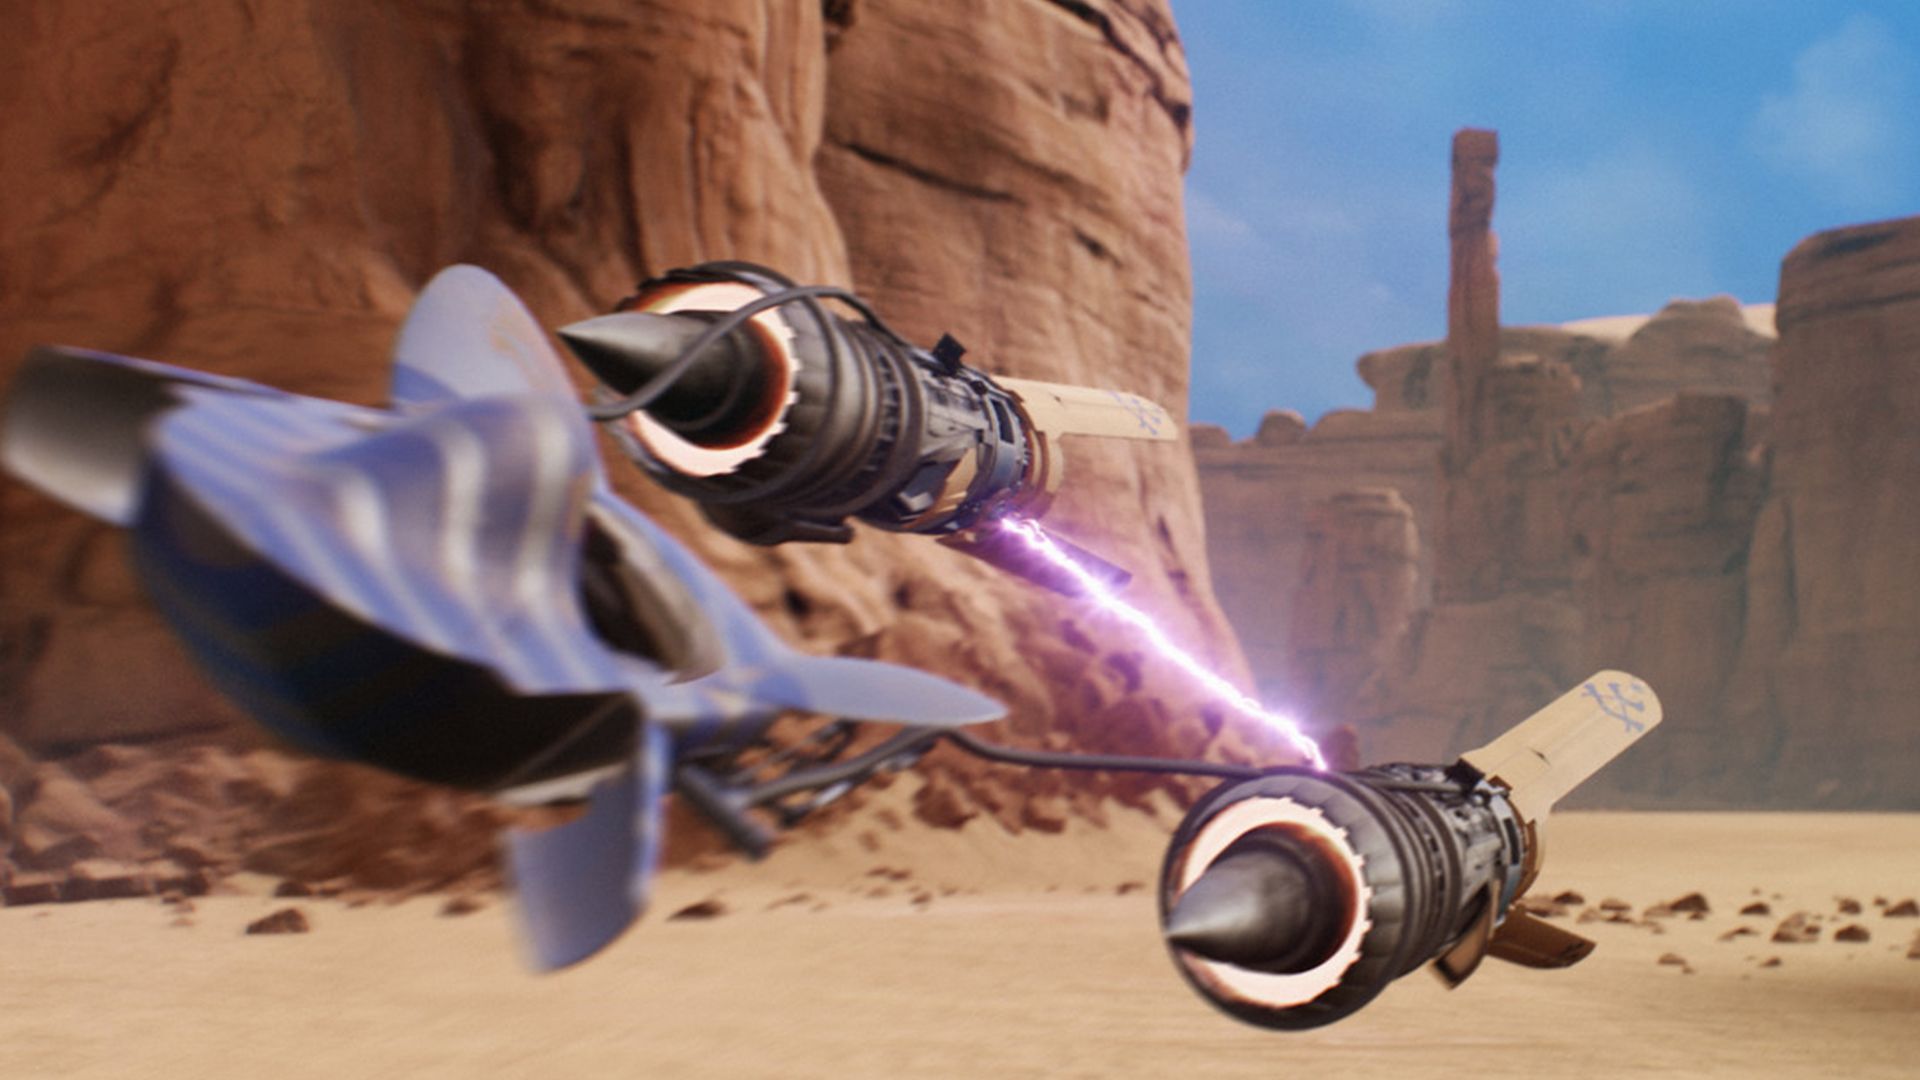 Star Wars Episode I: Racer lives again in Unreal Engine 4